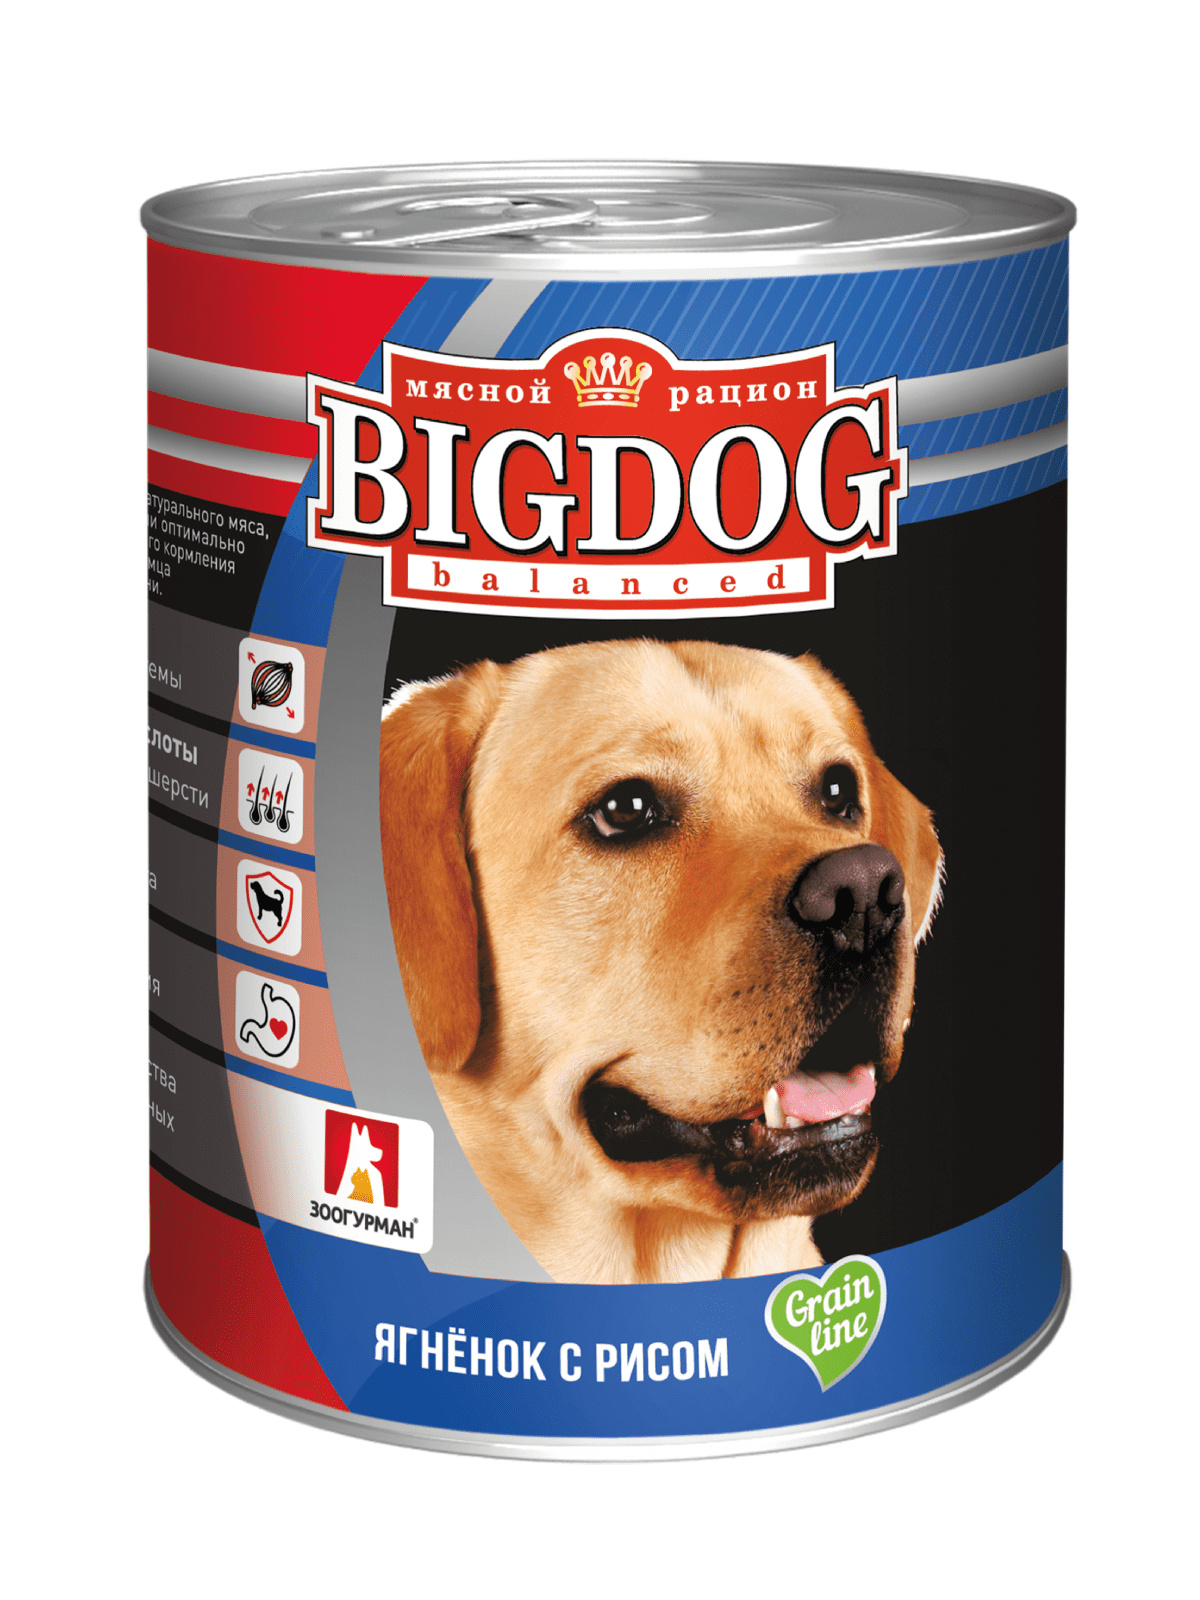 Зоогурман Зоогурман консервы для собак «БигДог» ягненок с рисом (850 г) зоогурман консервы для собак бигдог ягненок с рисом 0 85 кг 56477 2 шт